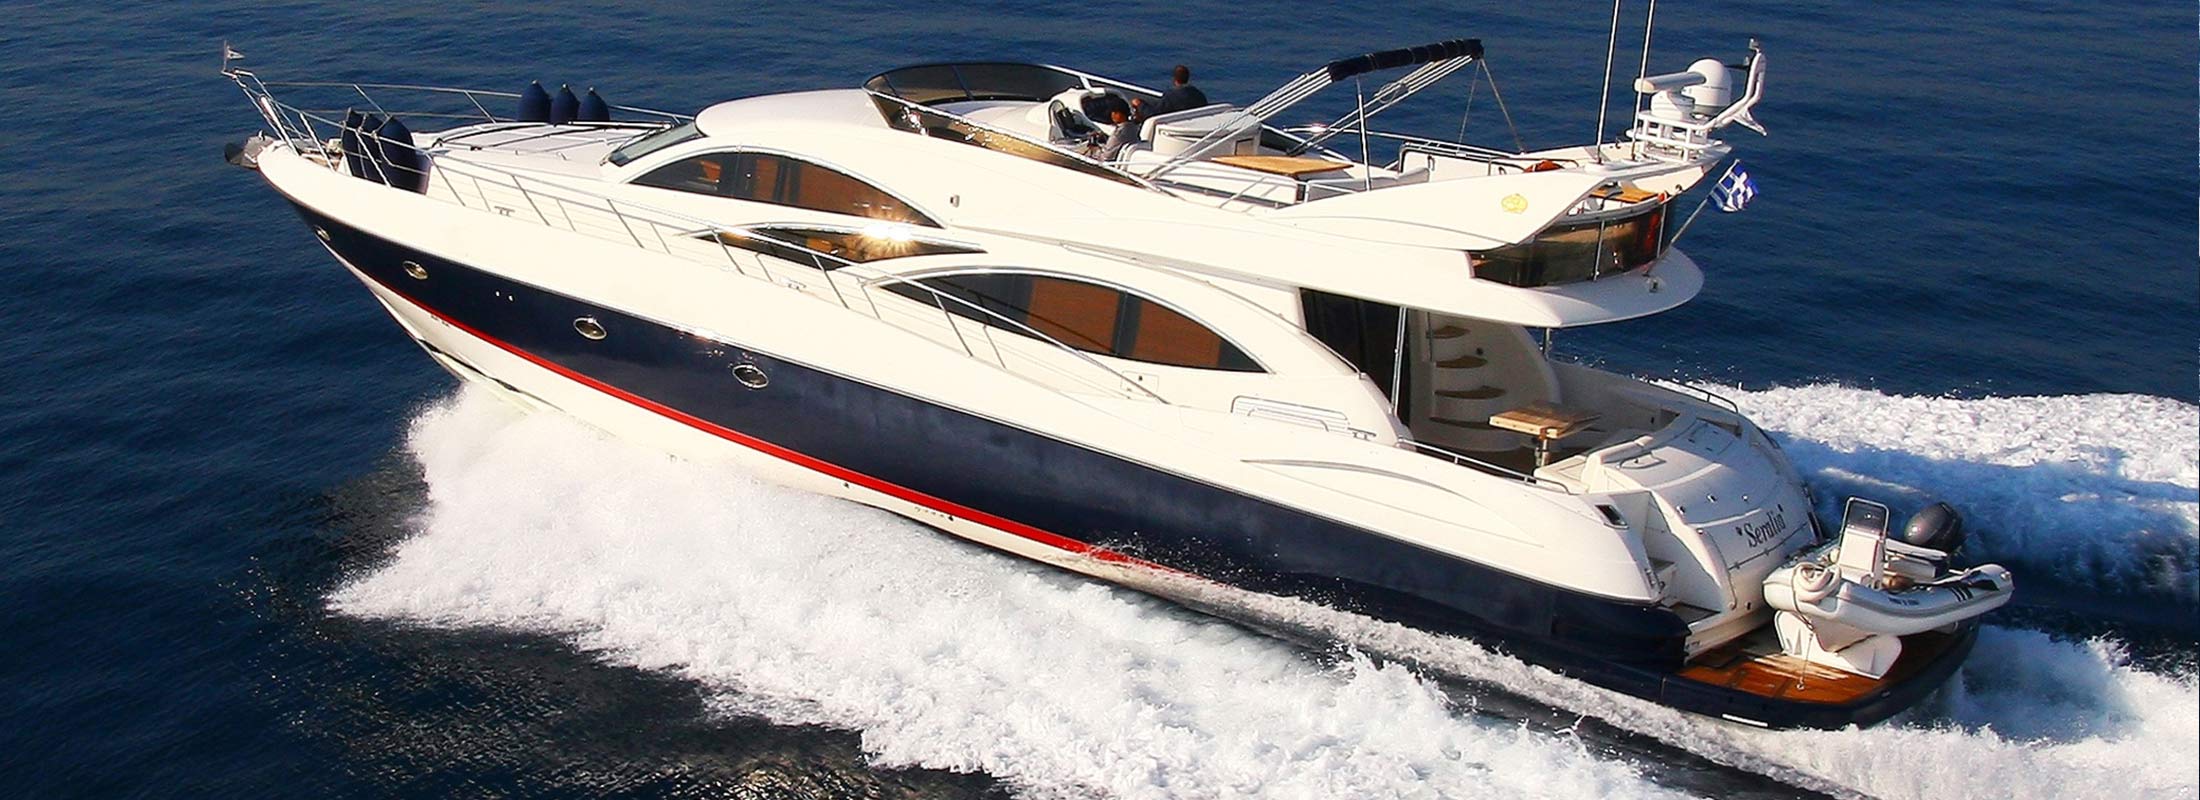 Seralia Motor Yacht for Charter Mediterranean slider 2